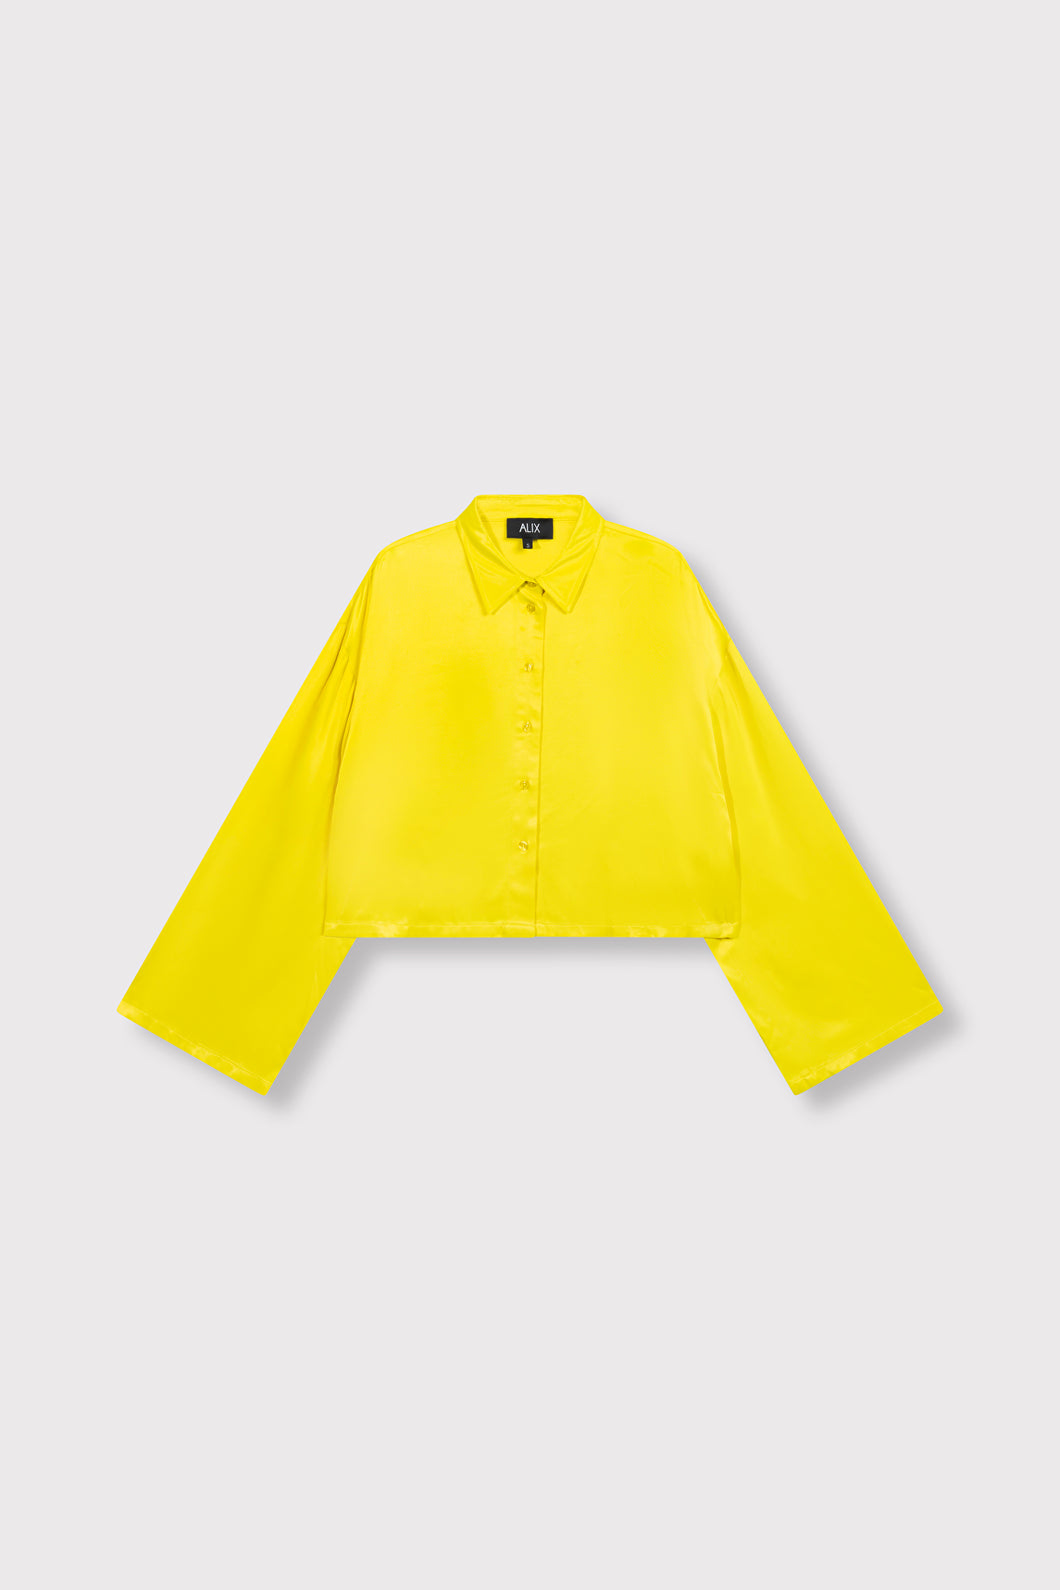 Kimono Sleeve Blouse Yellow